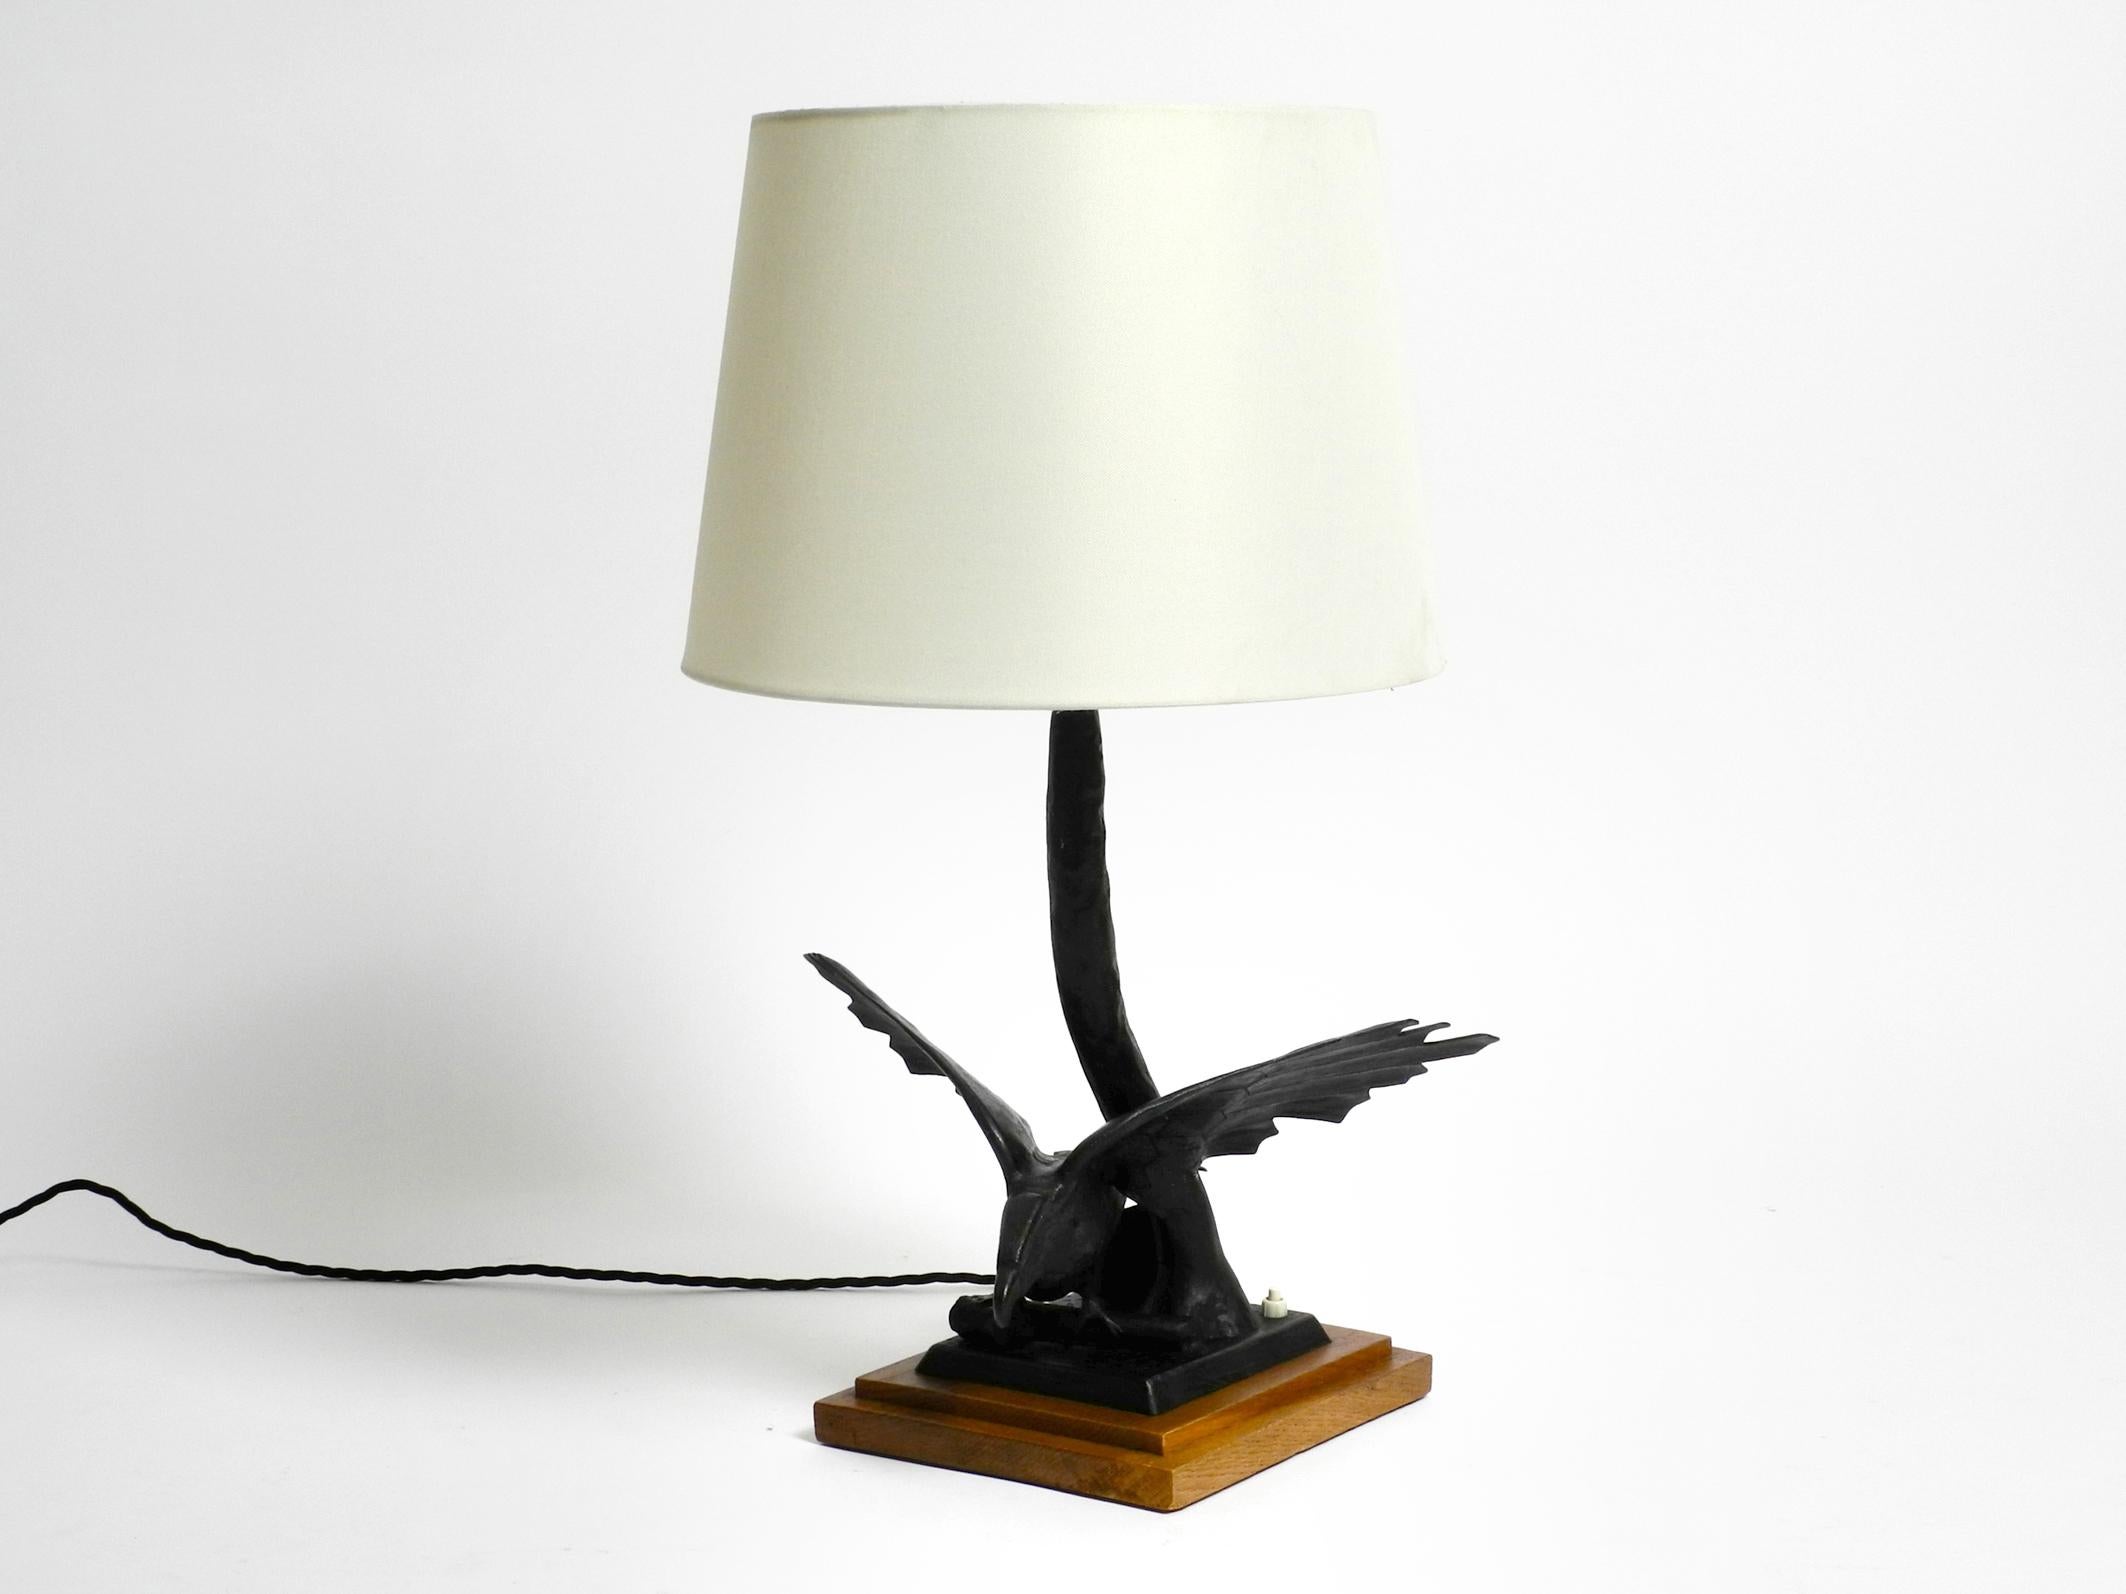 Très élégante grande lampe de table en fer des années 1940 en forme d'aigle avec une base en teck.
Superbe design d'avant-guerre. L'aigle complet est fabriqué en fer de couleur noire.
Très probablement d'une production italienne.
Sans dommage